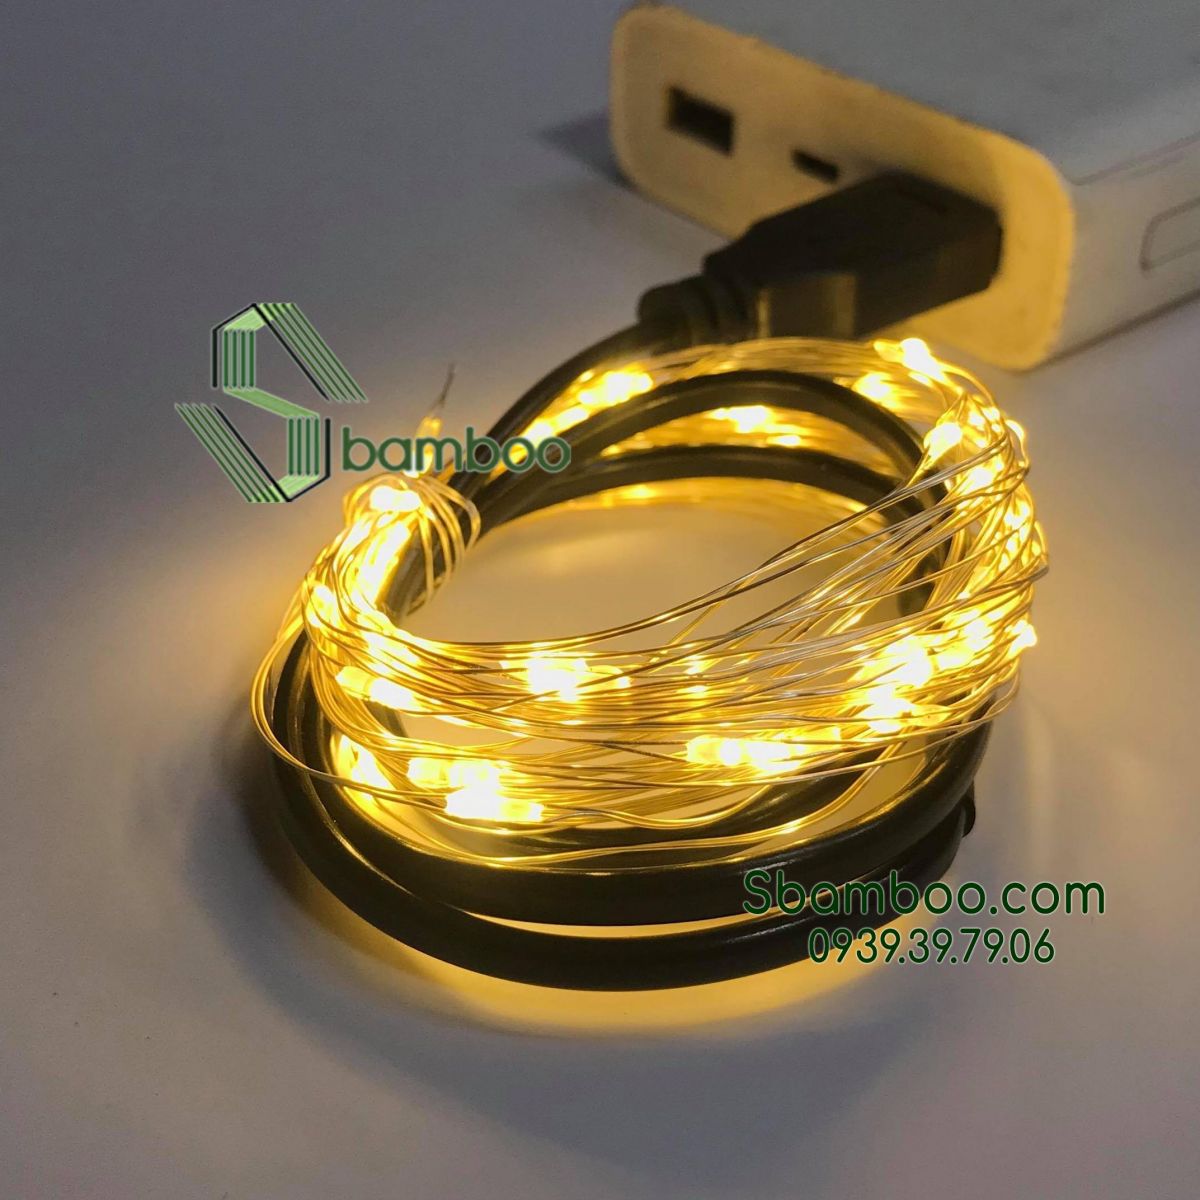 Đèn Led Đom Đóm Sbamboo 5 Mét- USB- Màu vàng trang trí nhà mô hình tăm tre 